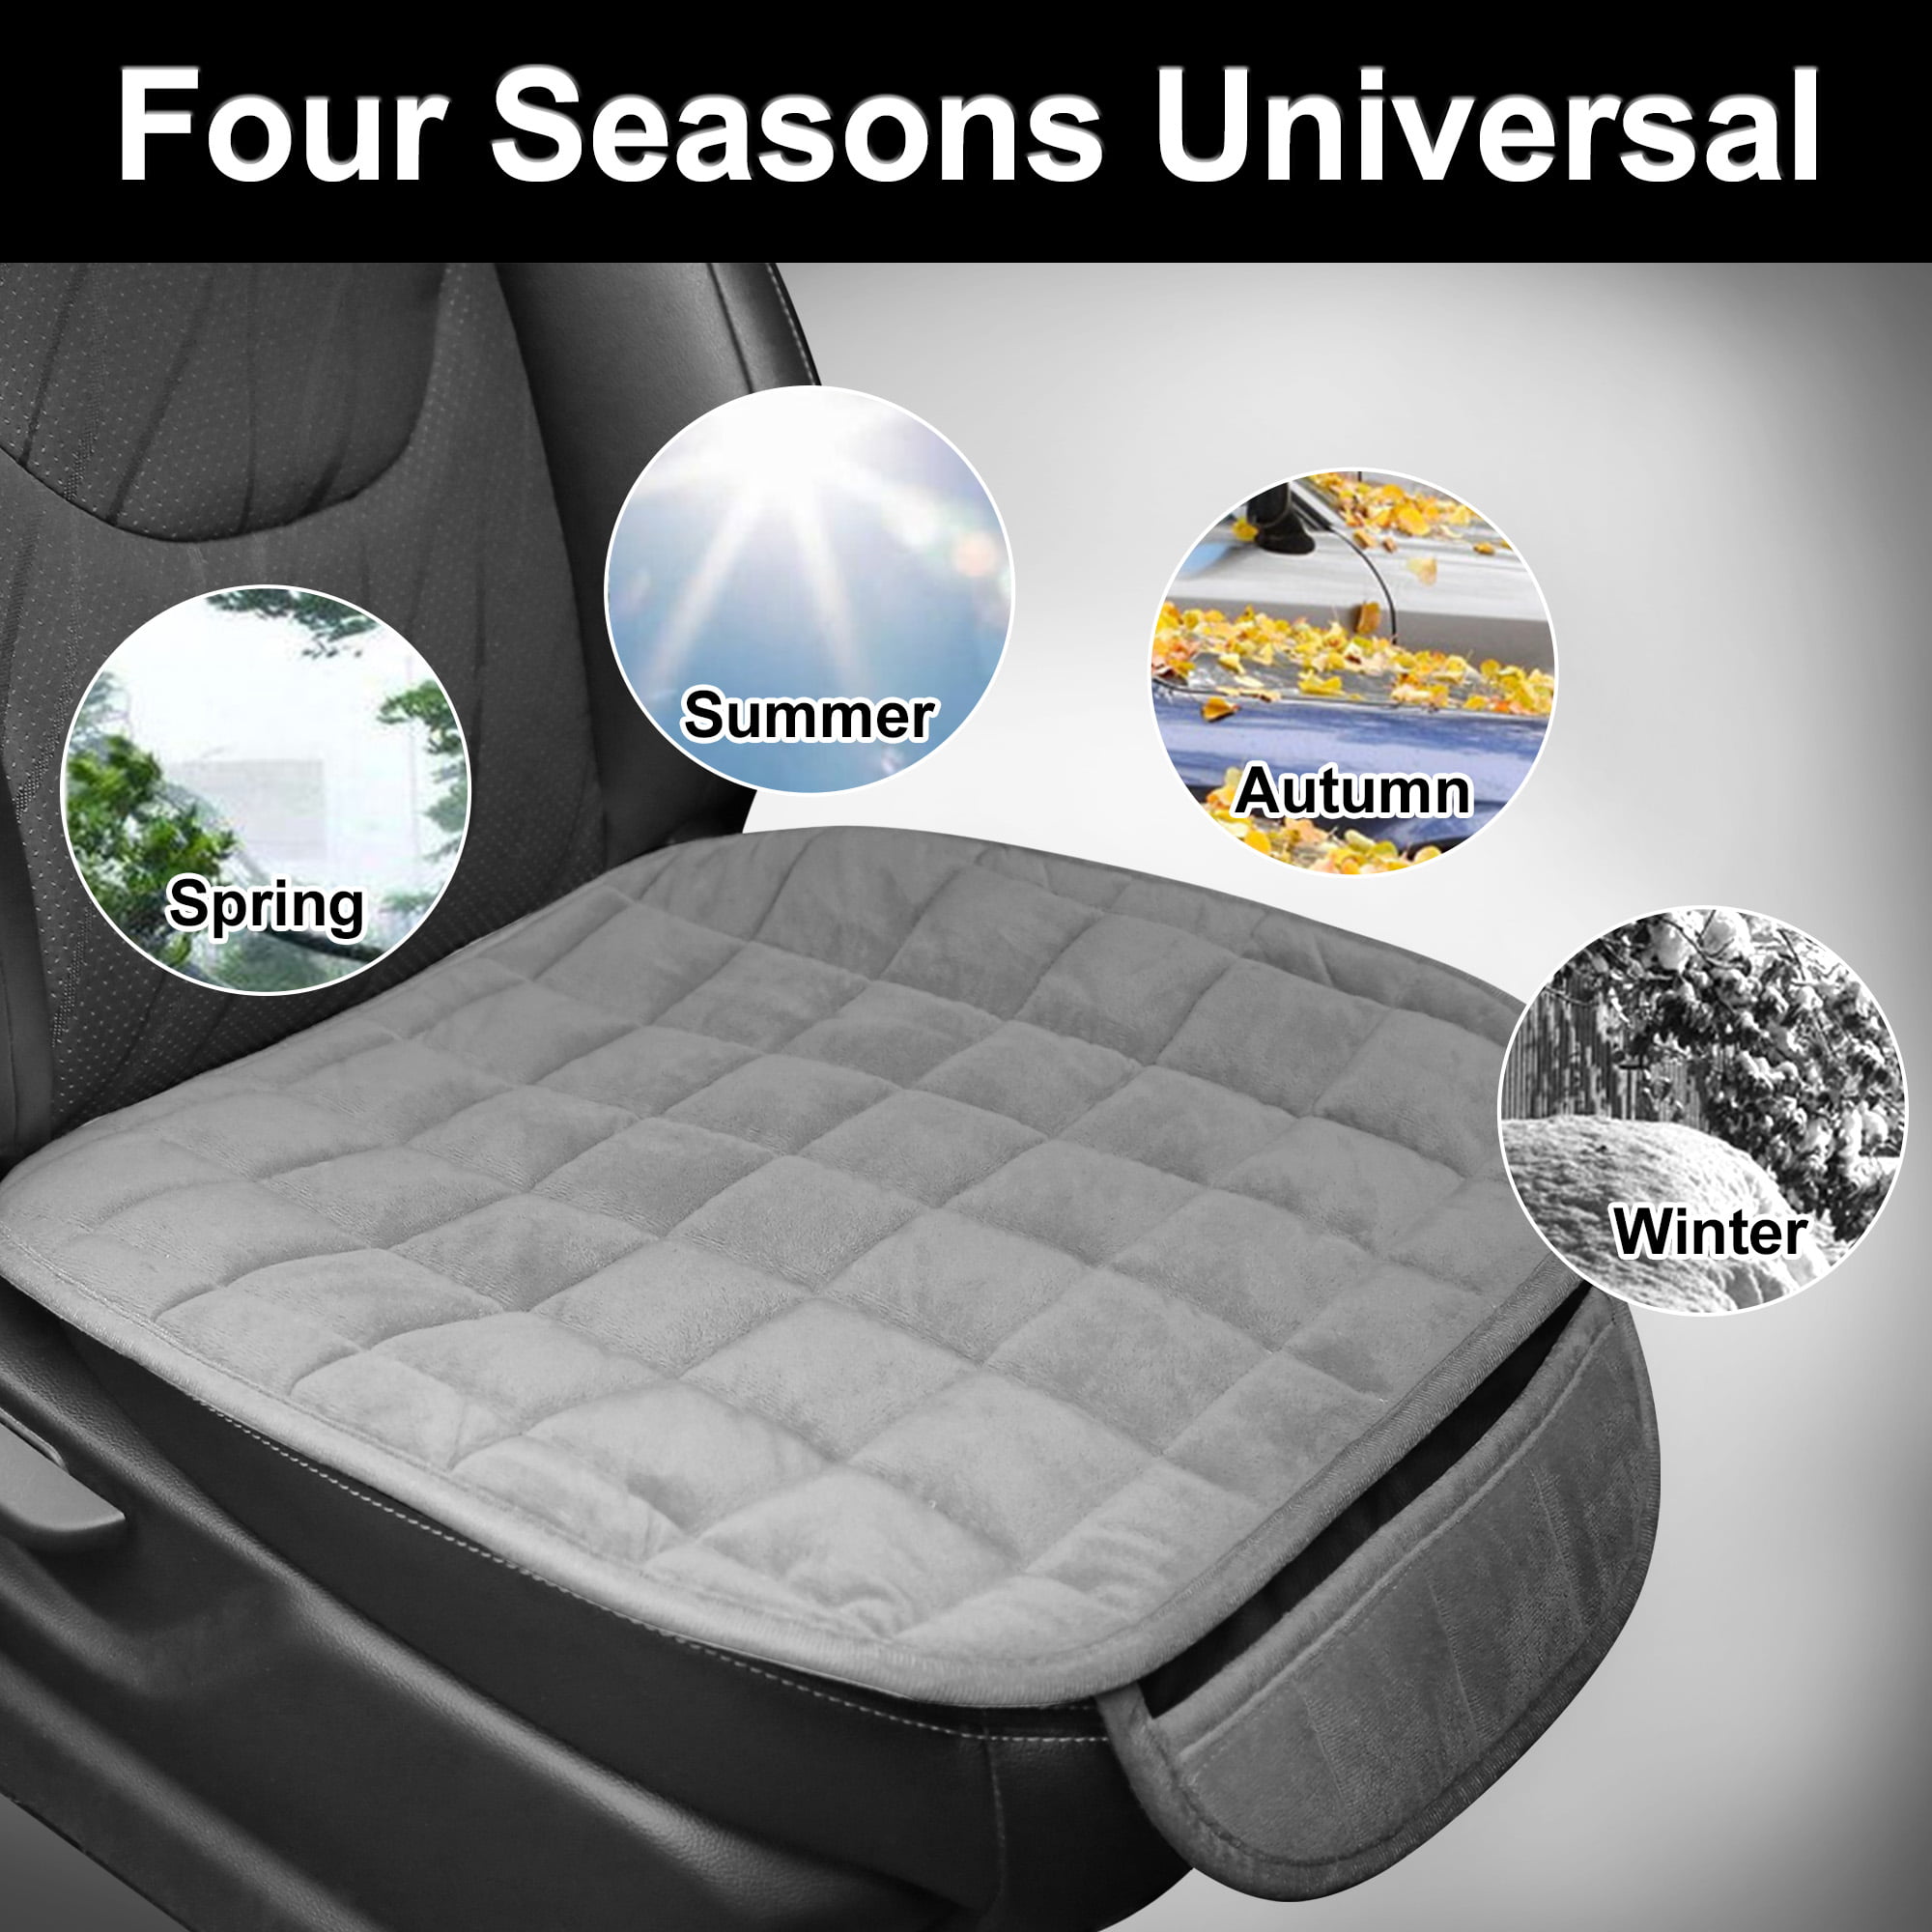 Unique Bargains Cloth Fabric Car Front Seat Cover Kit 2 Pcs : Target